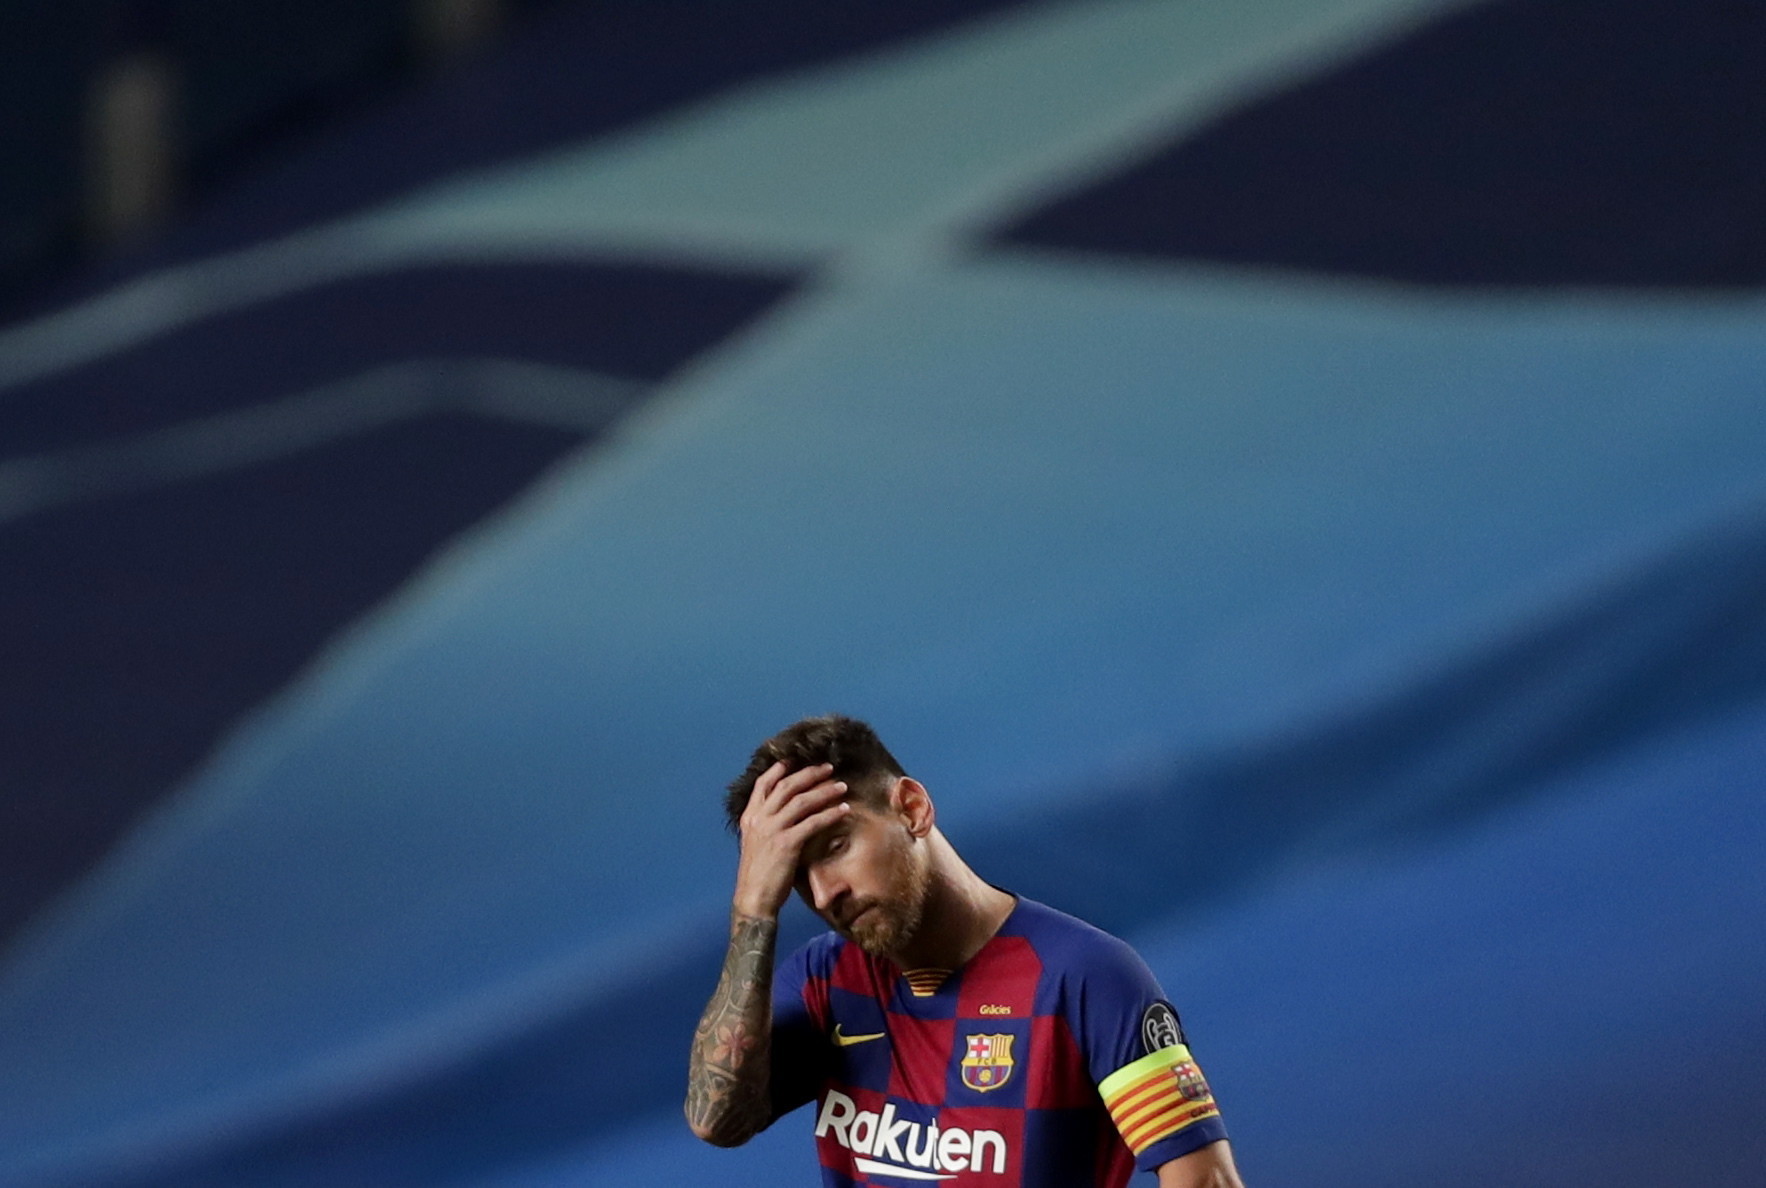 Imaginea care face înconjurul lumii. Cum a fost surprins Messi în vestiar, după dezastrul cu Bayern - Imaginea 2